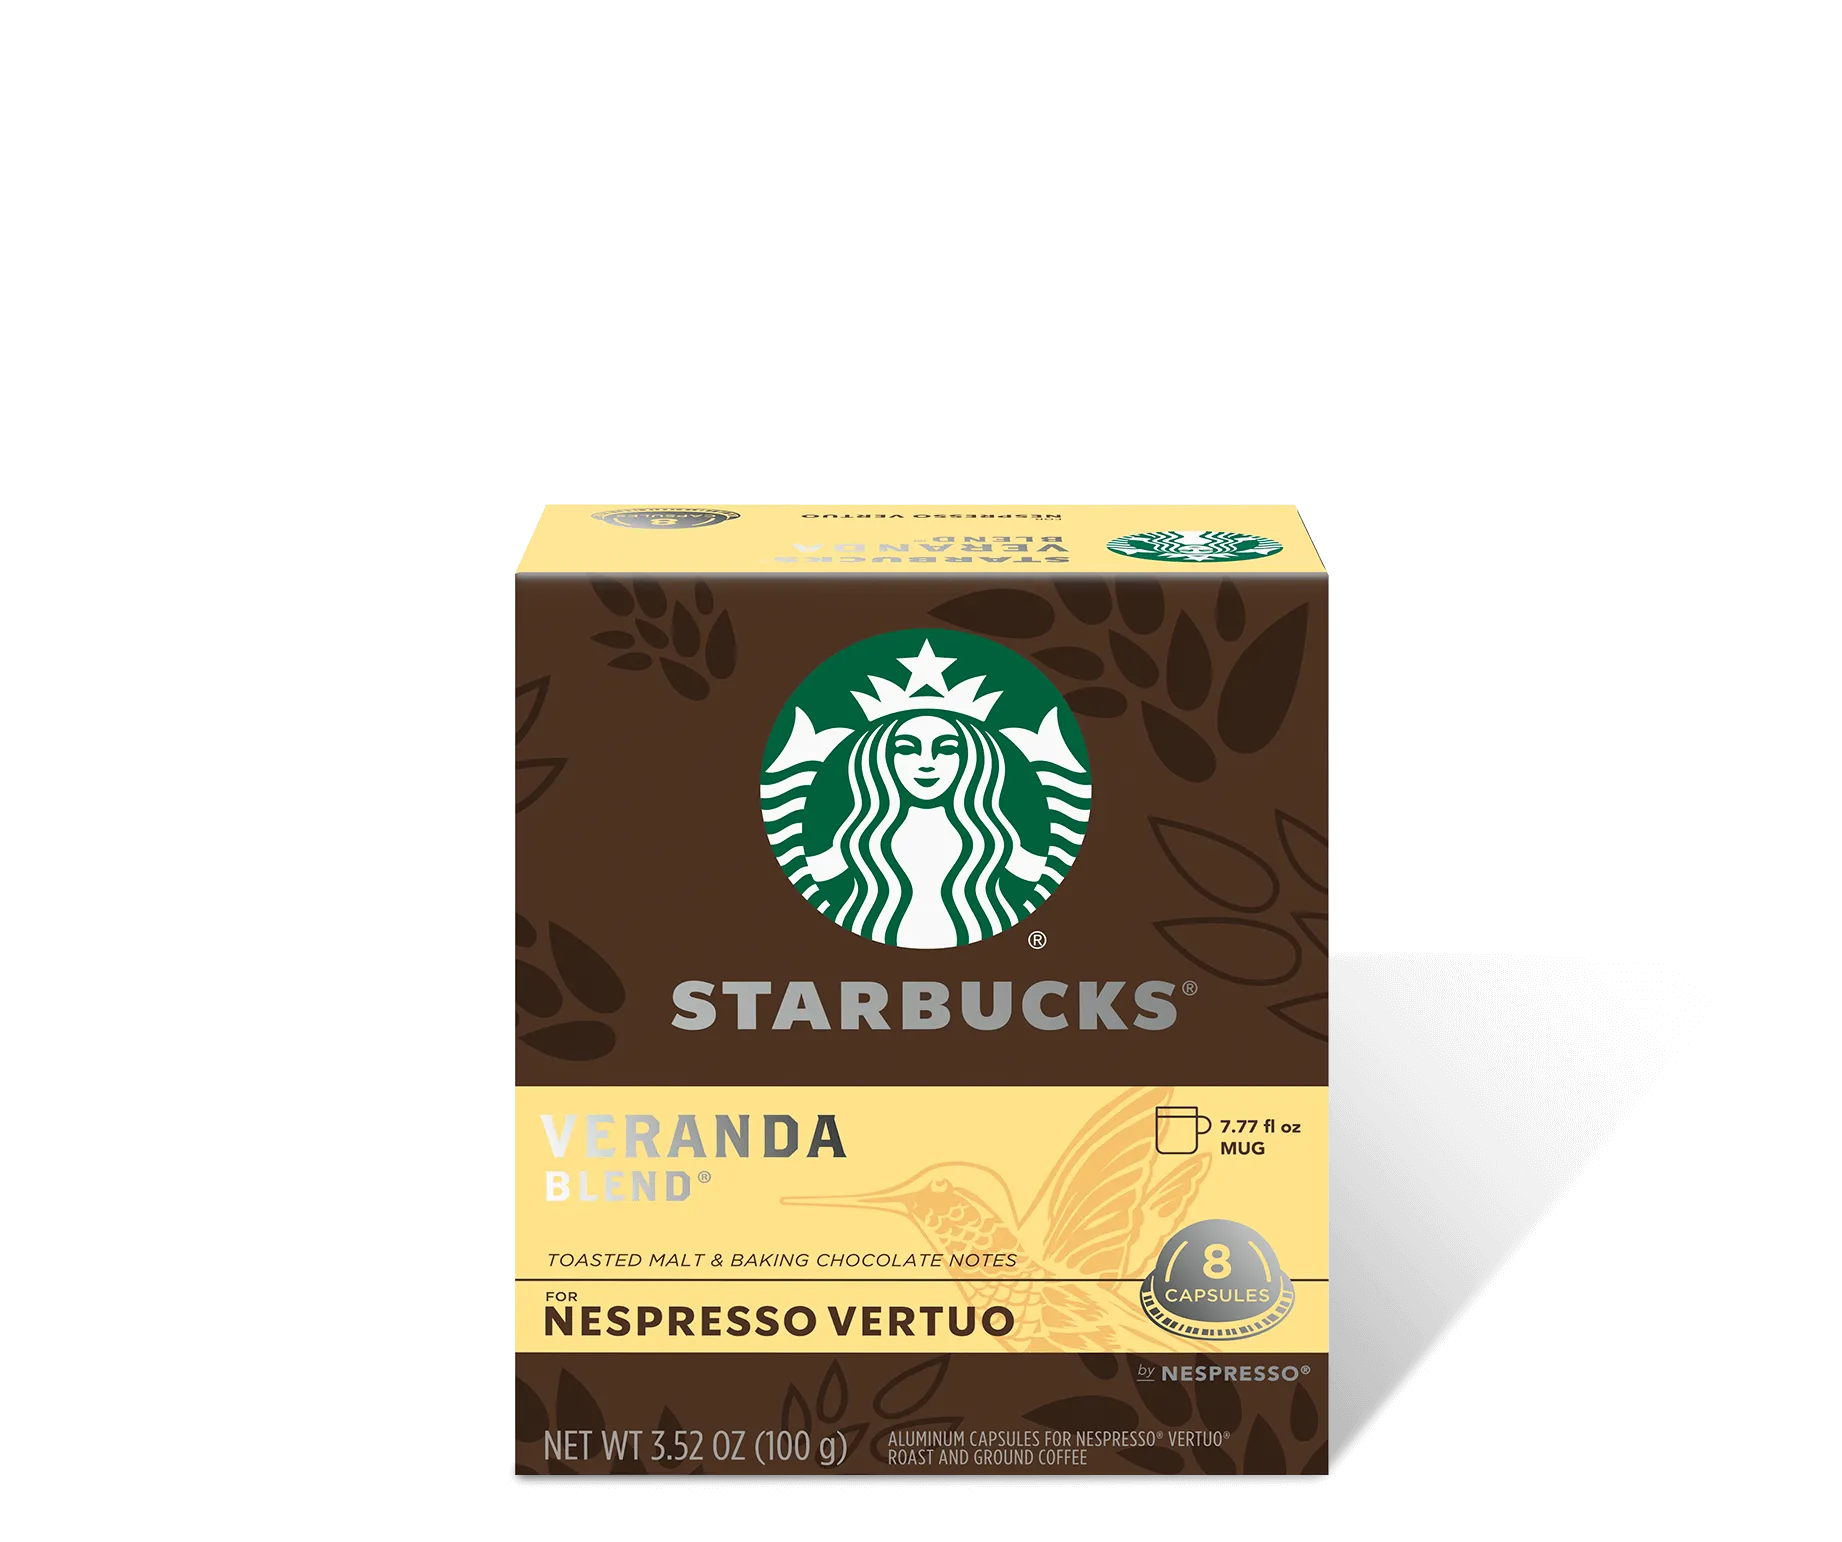 New Starbucks pods by Nespresso. Looks good, anyone tried it yet? : r/ nespresso